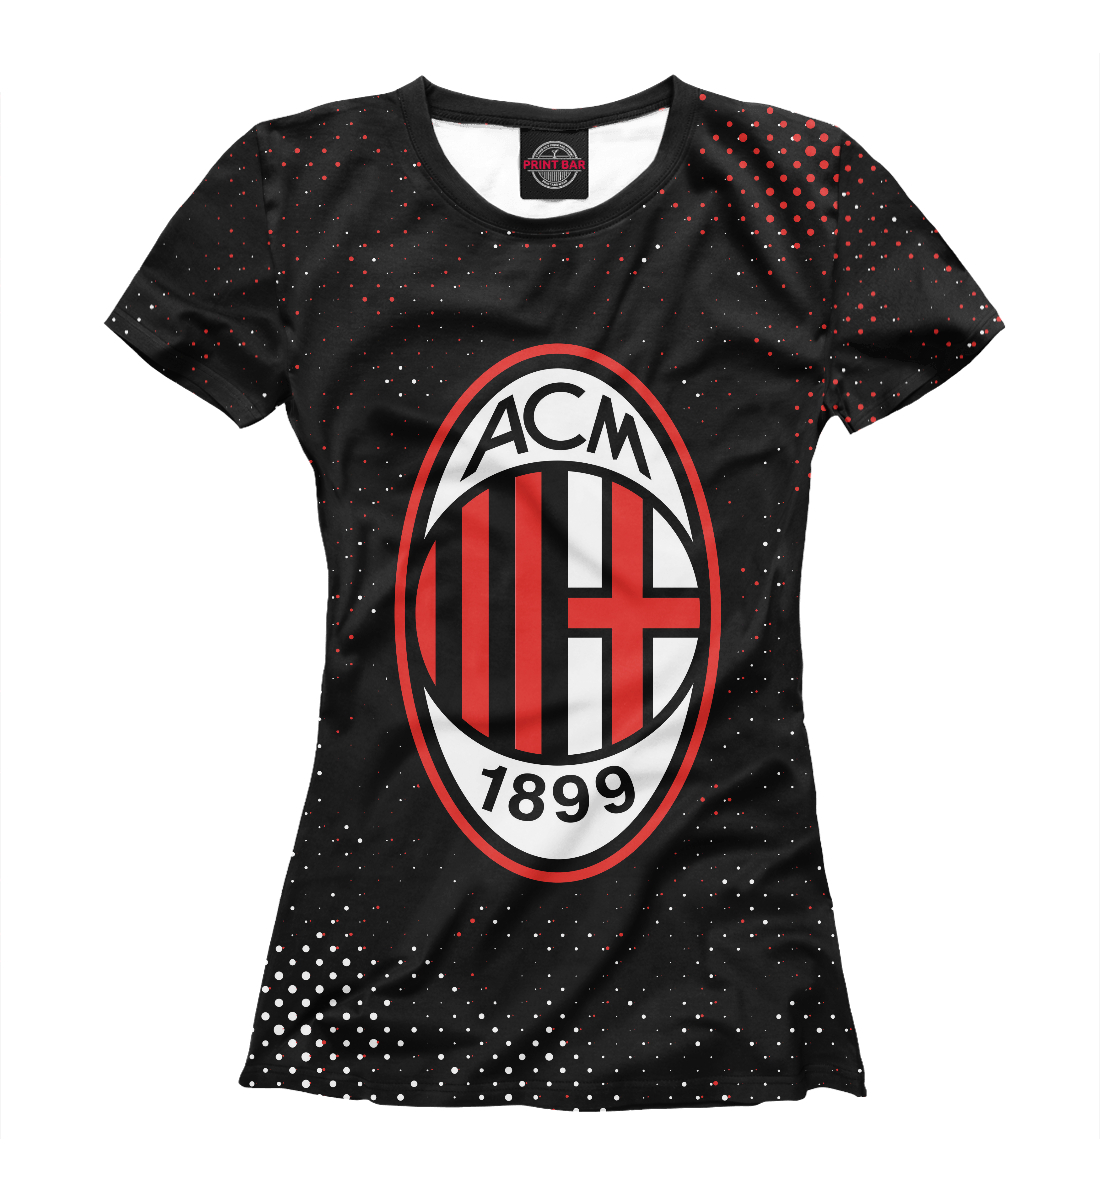 Футболка AC Milan / Милан для девочек, артикул: ACM-978207-fut-1mp